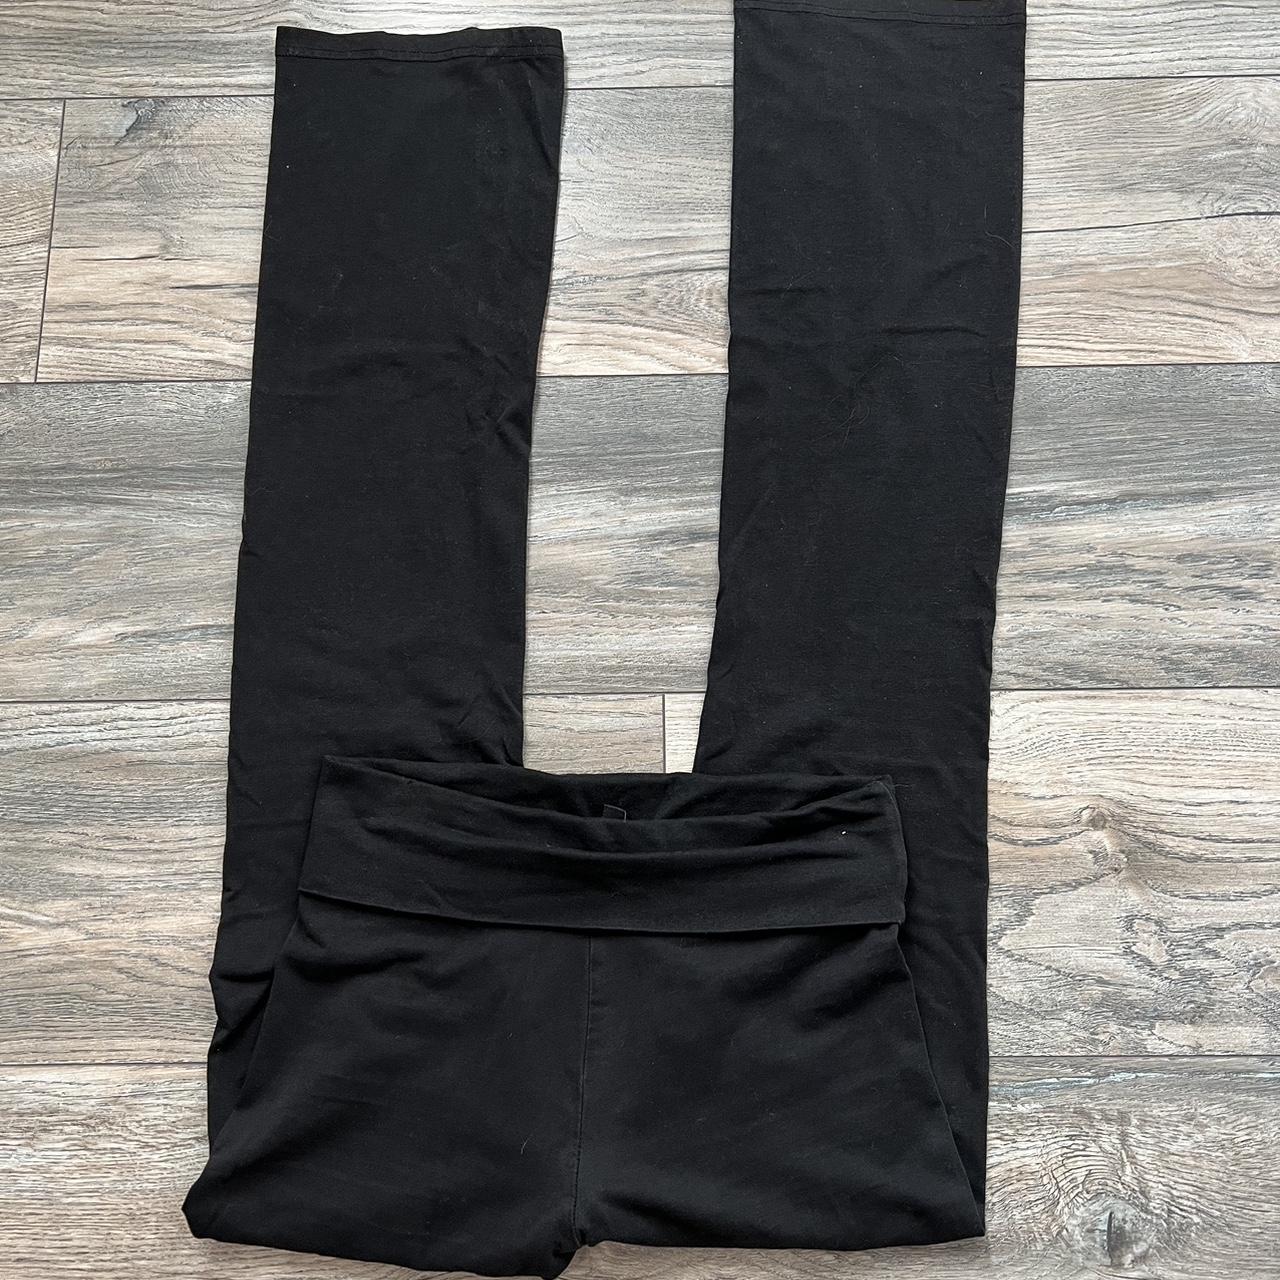 Black fold over bootcut yoga pants Best for shorter... - Depop